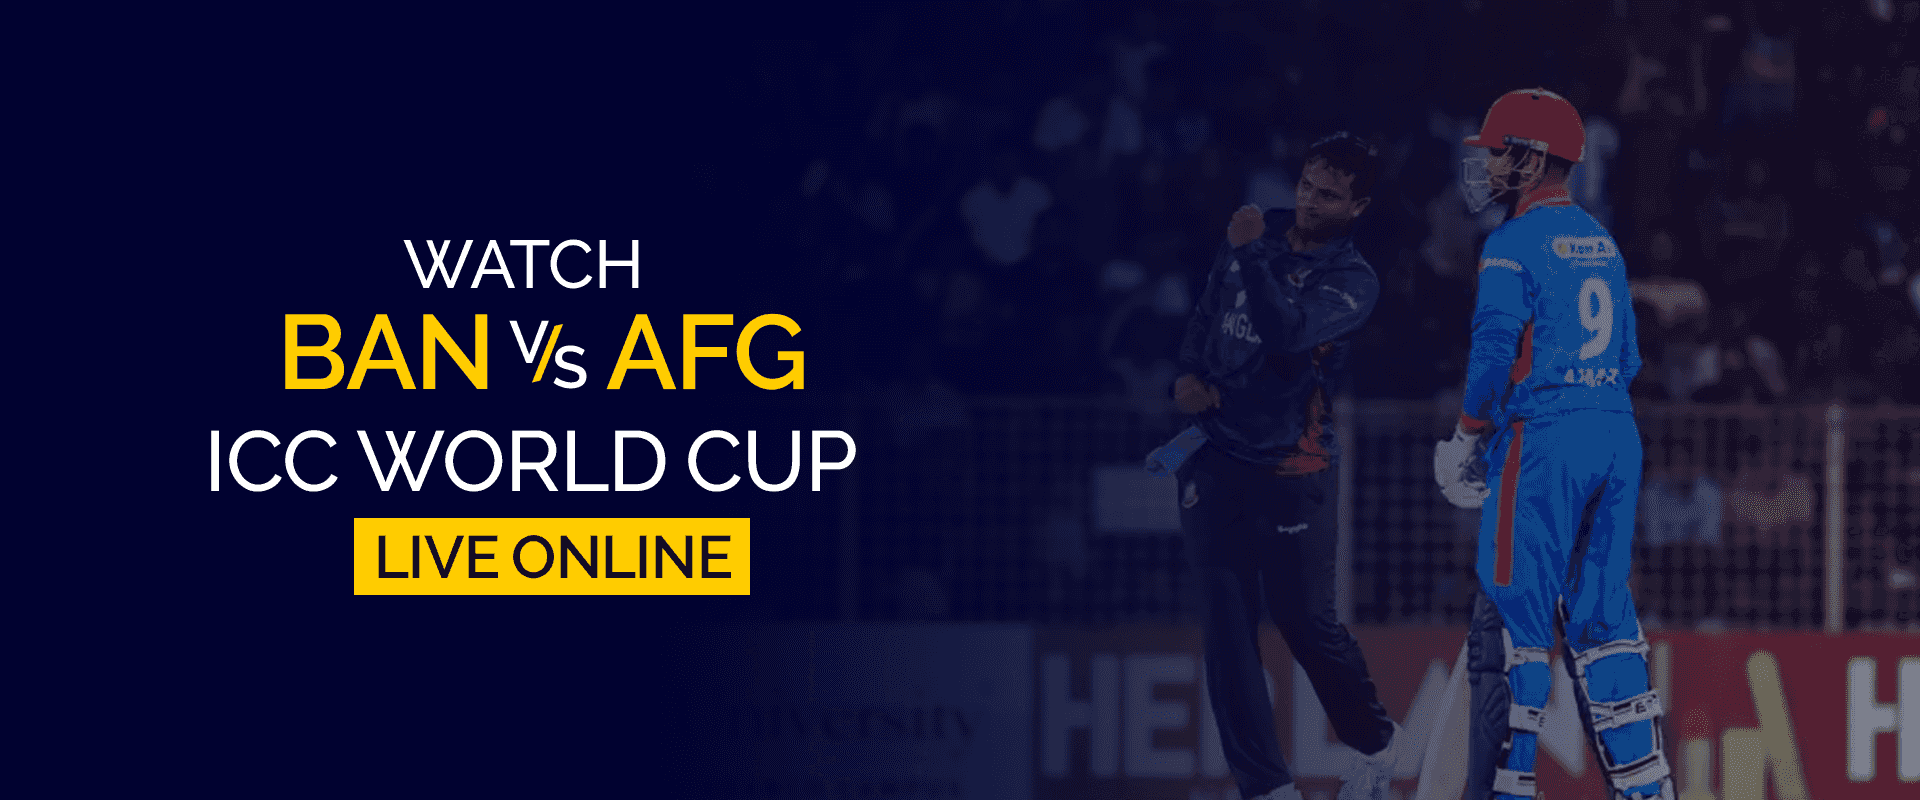 Oglądaj Puchar Świata BAN vs AFG ICC na żywo w Internecie